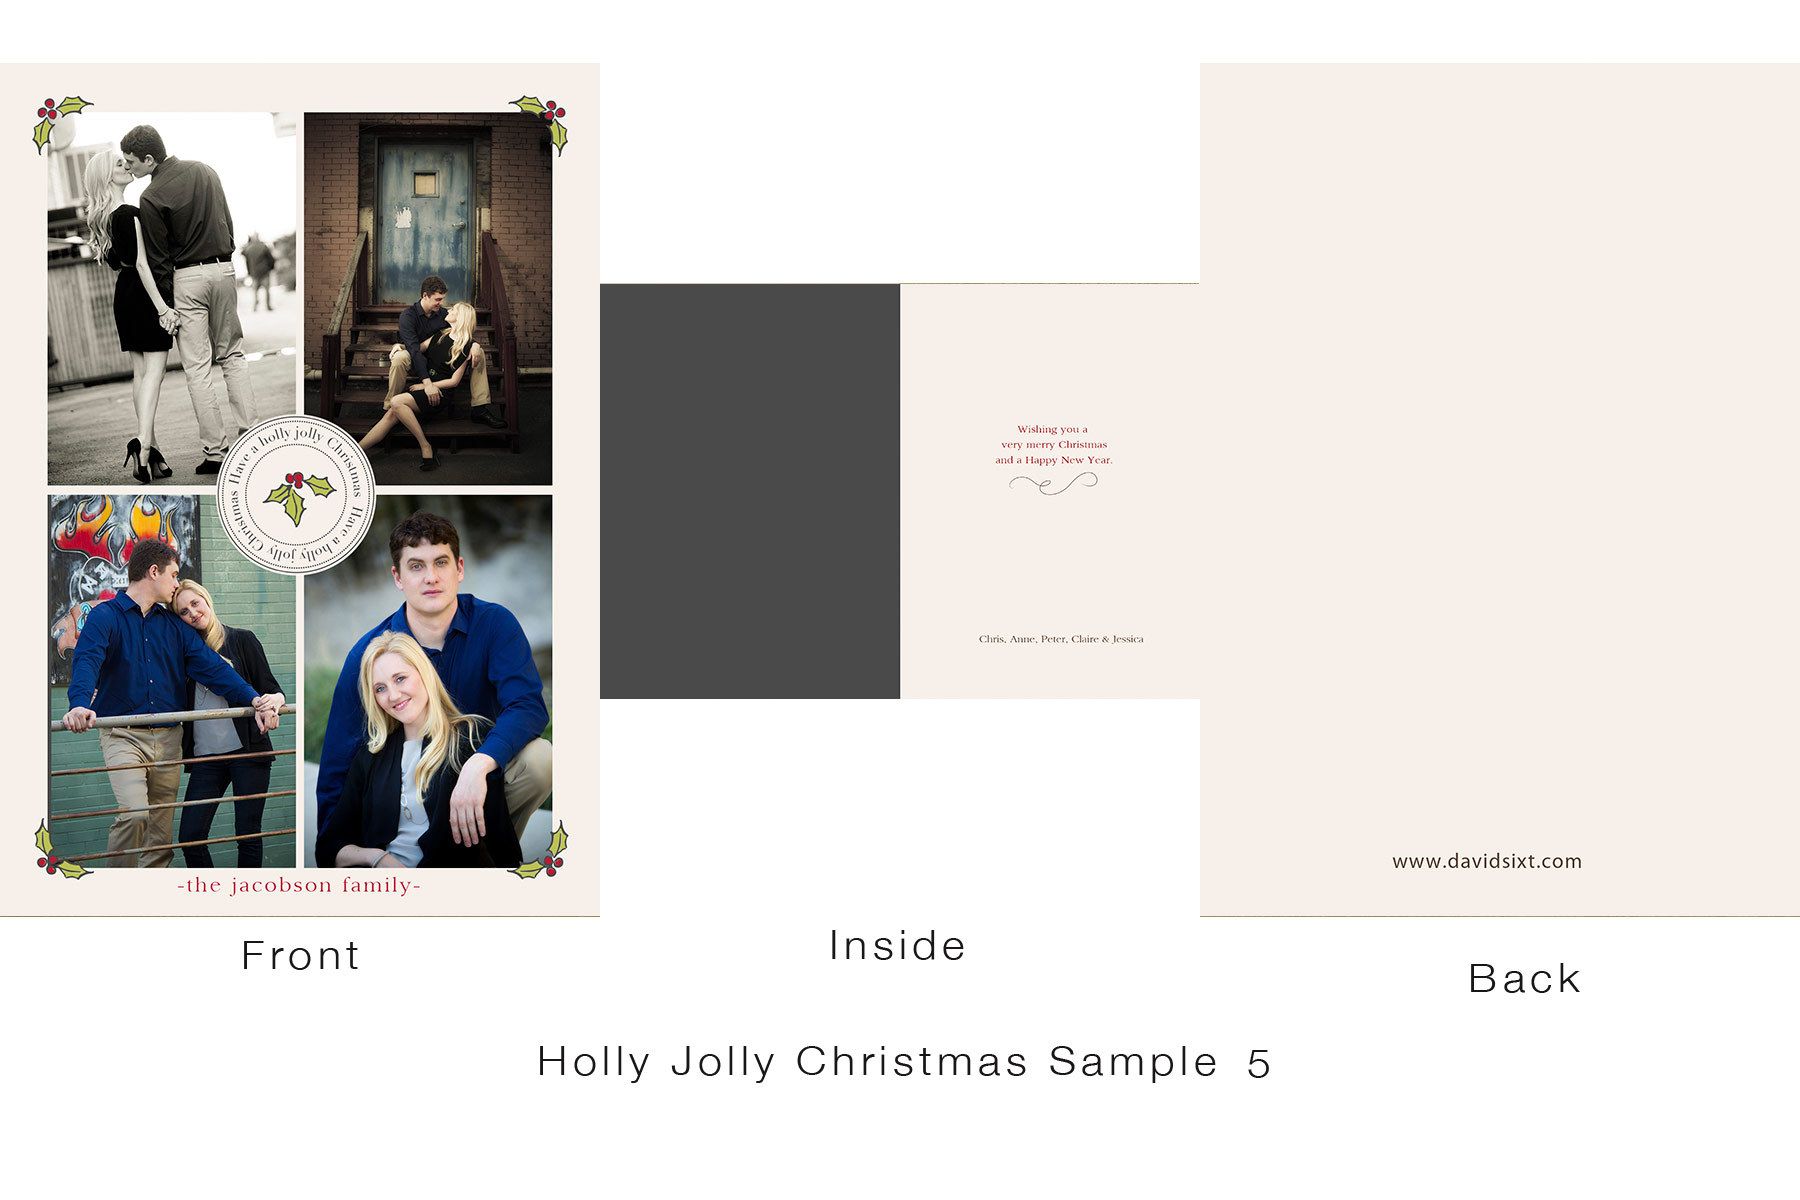 1holly_jolly_christmas_sample_5.jpg